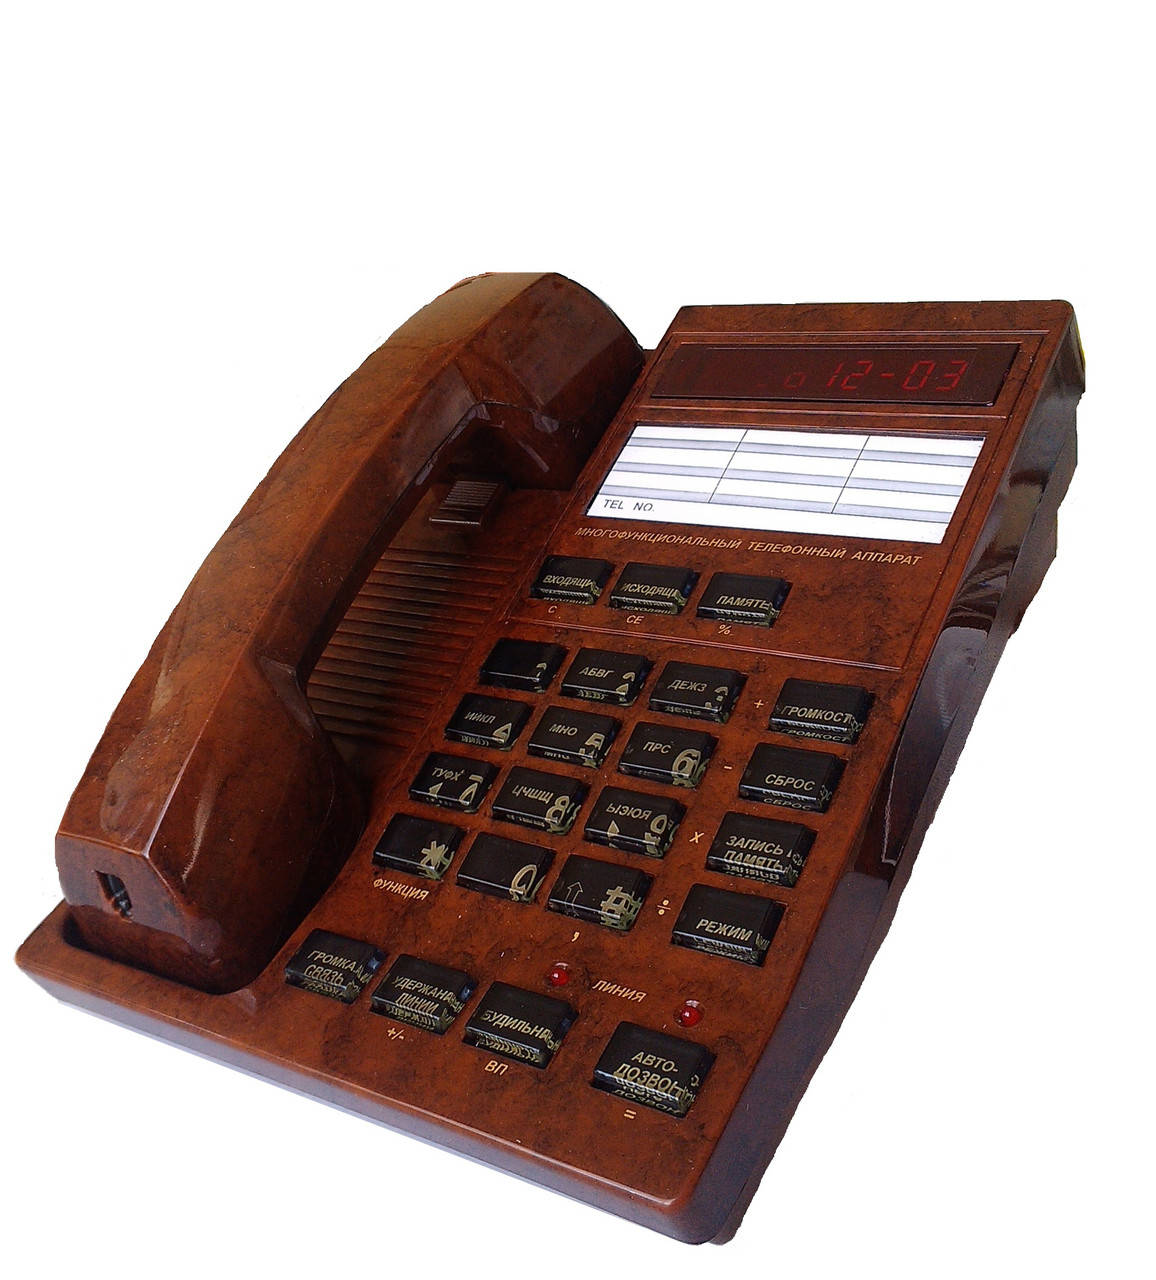 

Многофункциональный телефон с АОН Русь-27